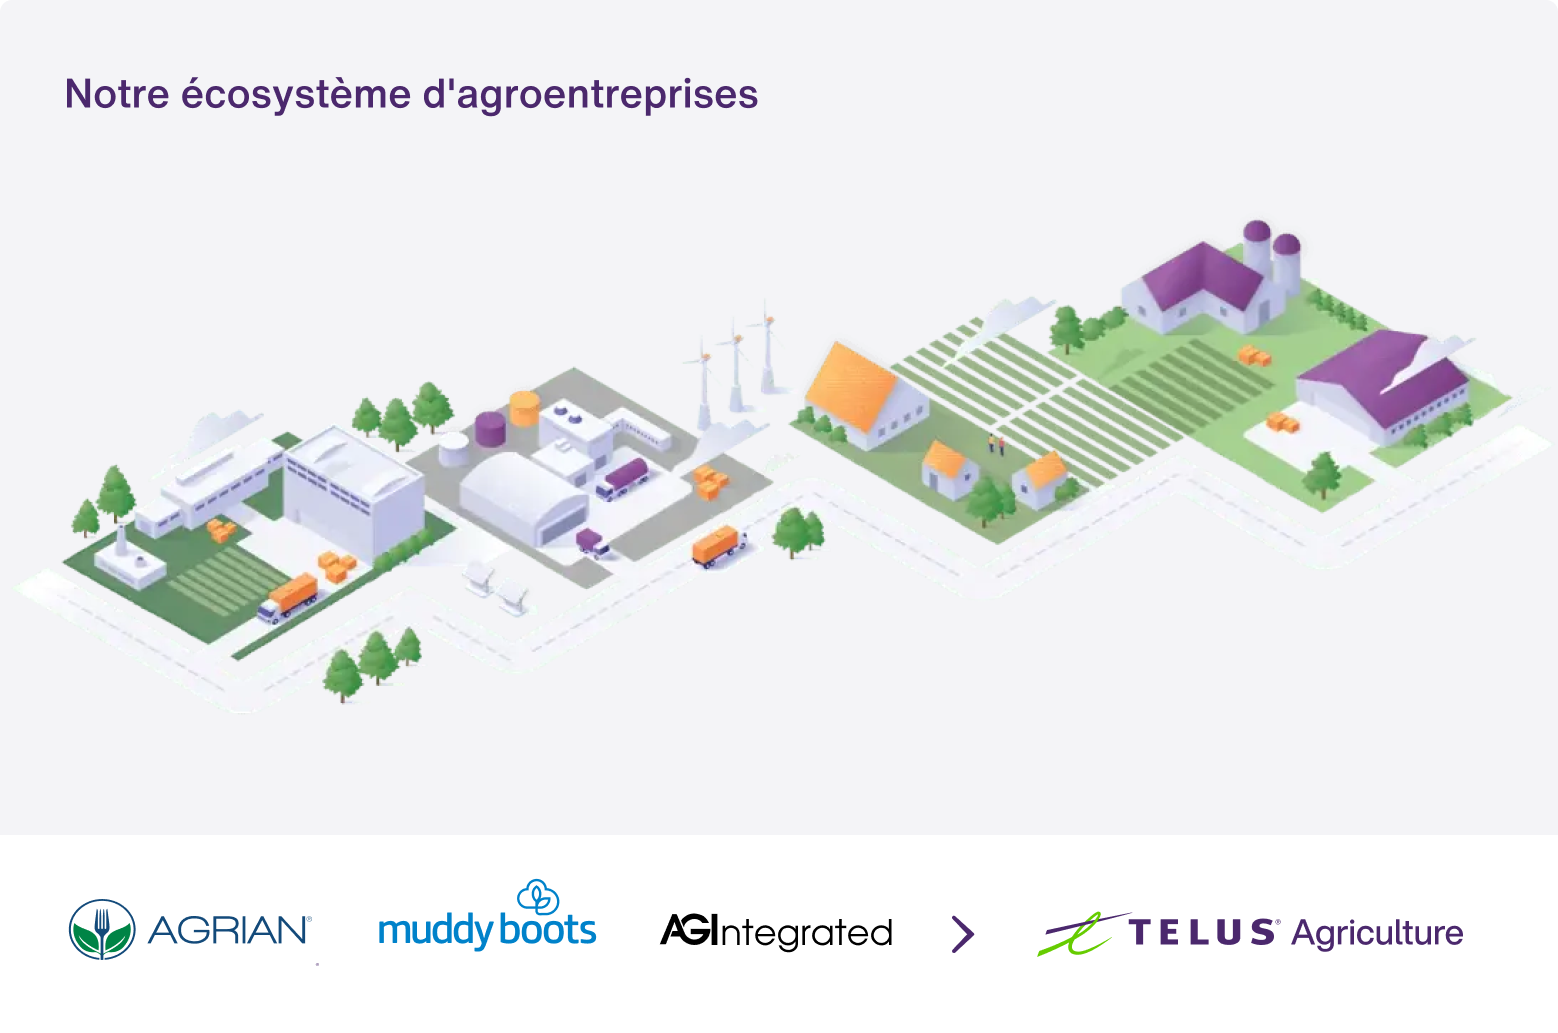 Une visualisation 3D de l’écosystème de agroentreprises